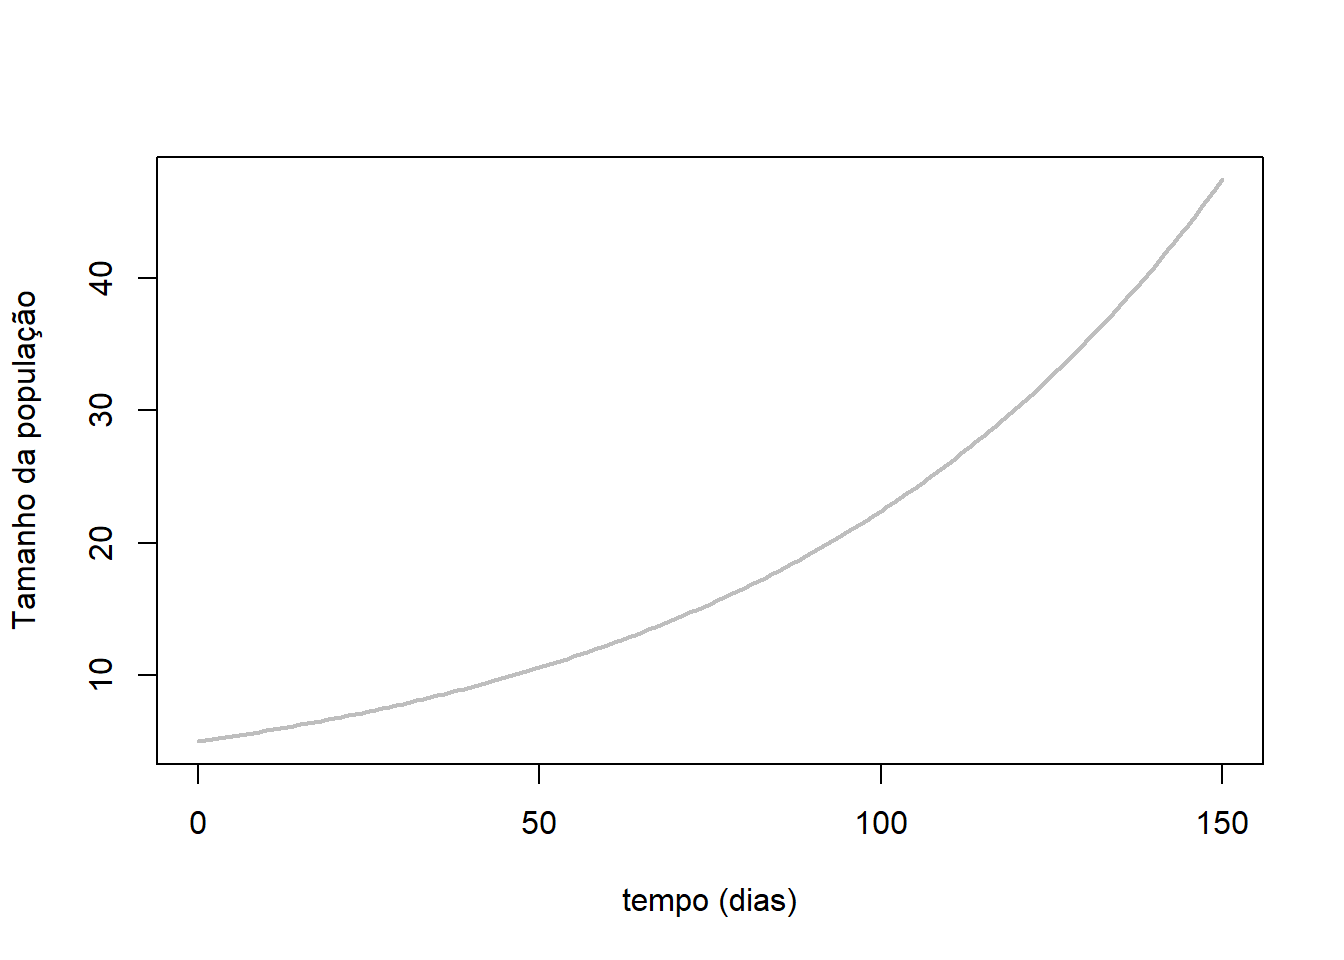 Exemplo de modelo exponencial de crescimento